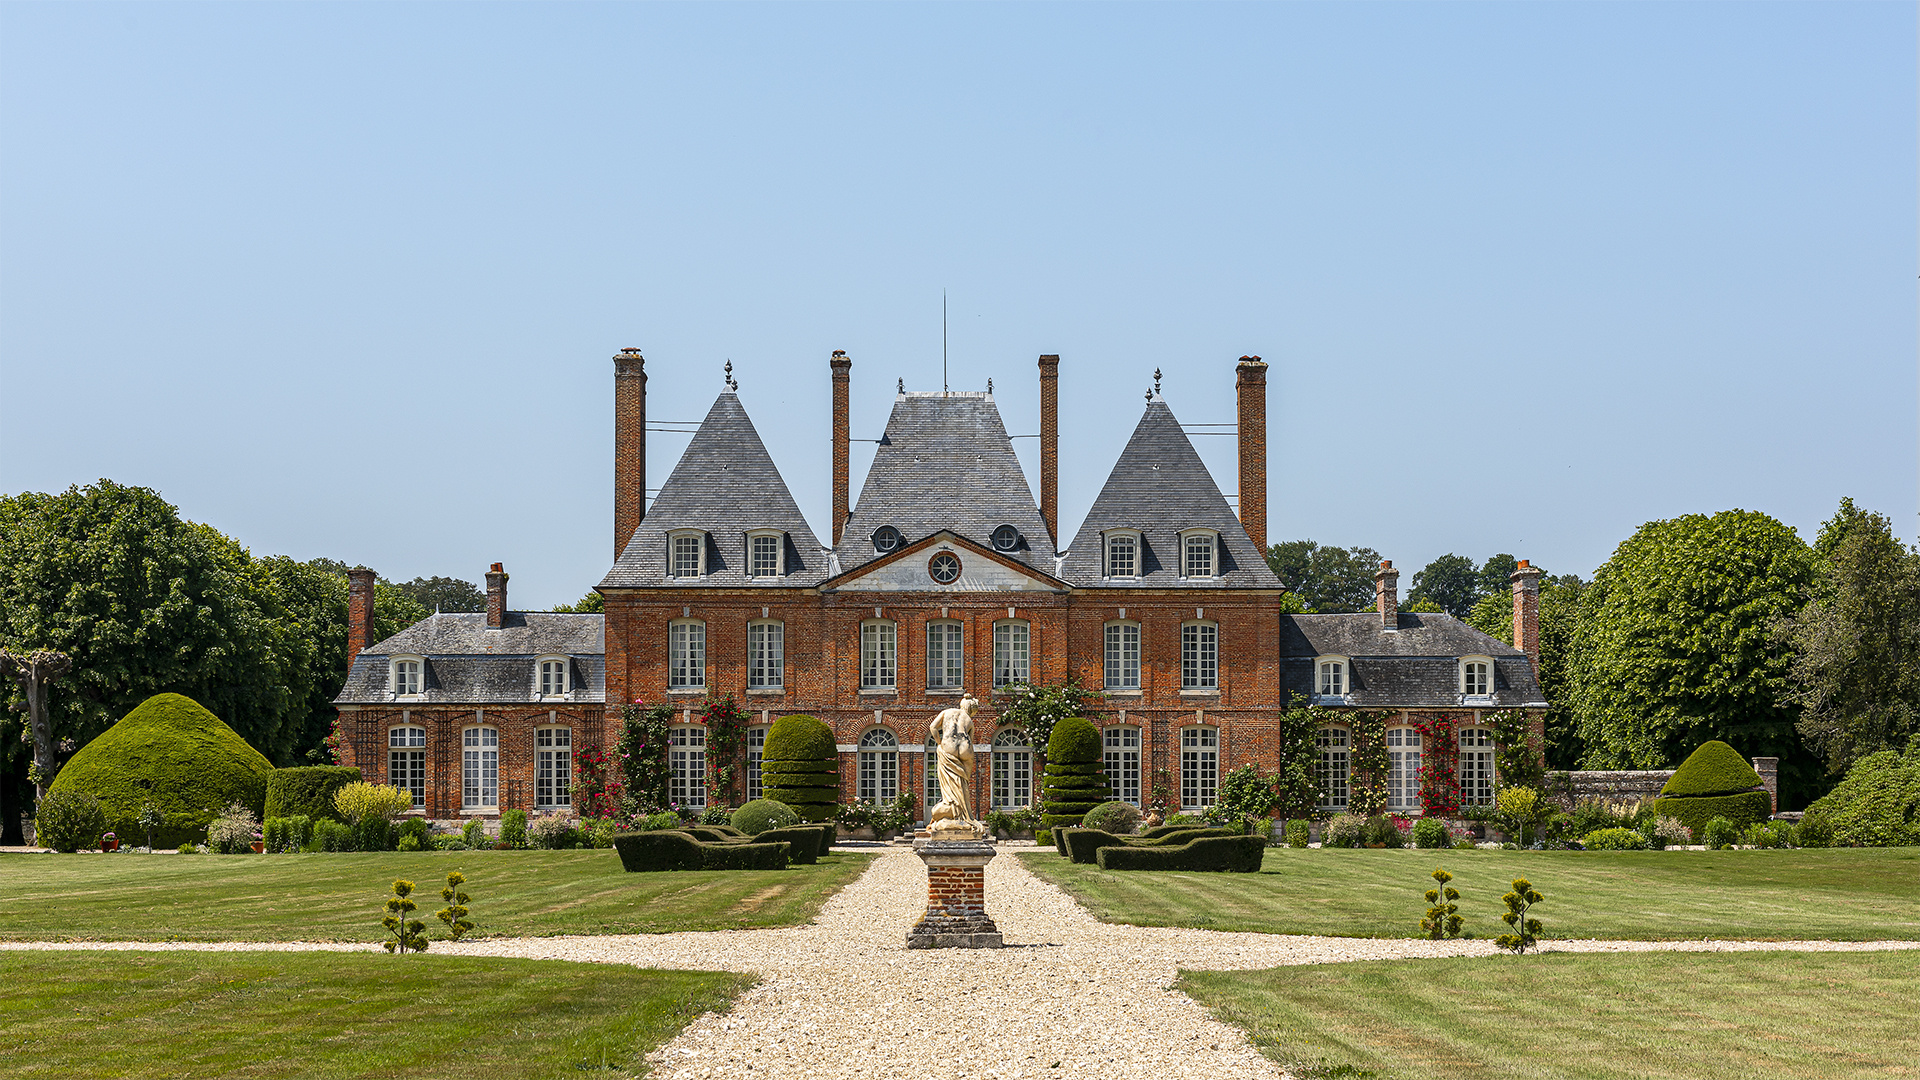 Château de Mesnil Geoffroy